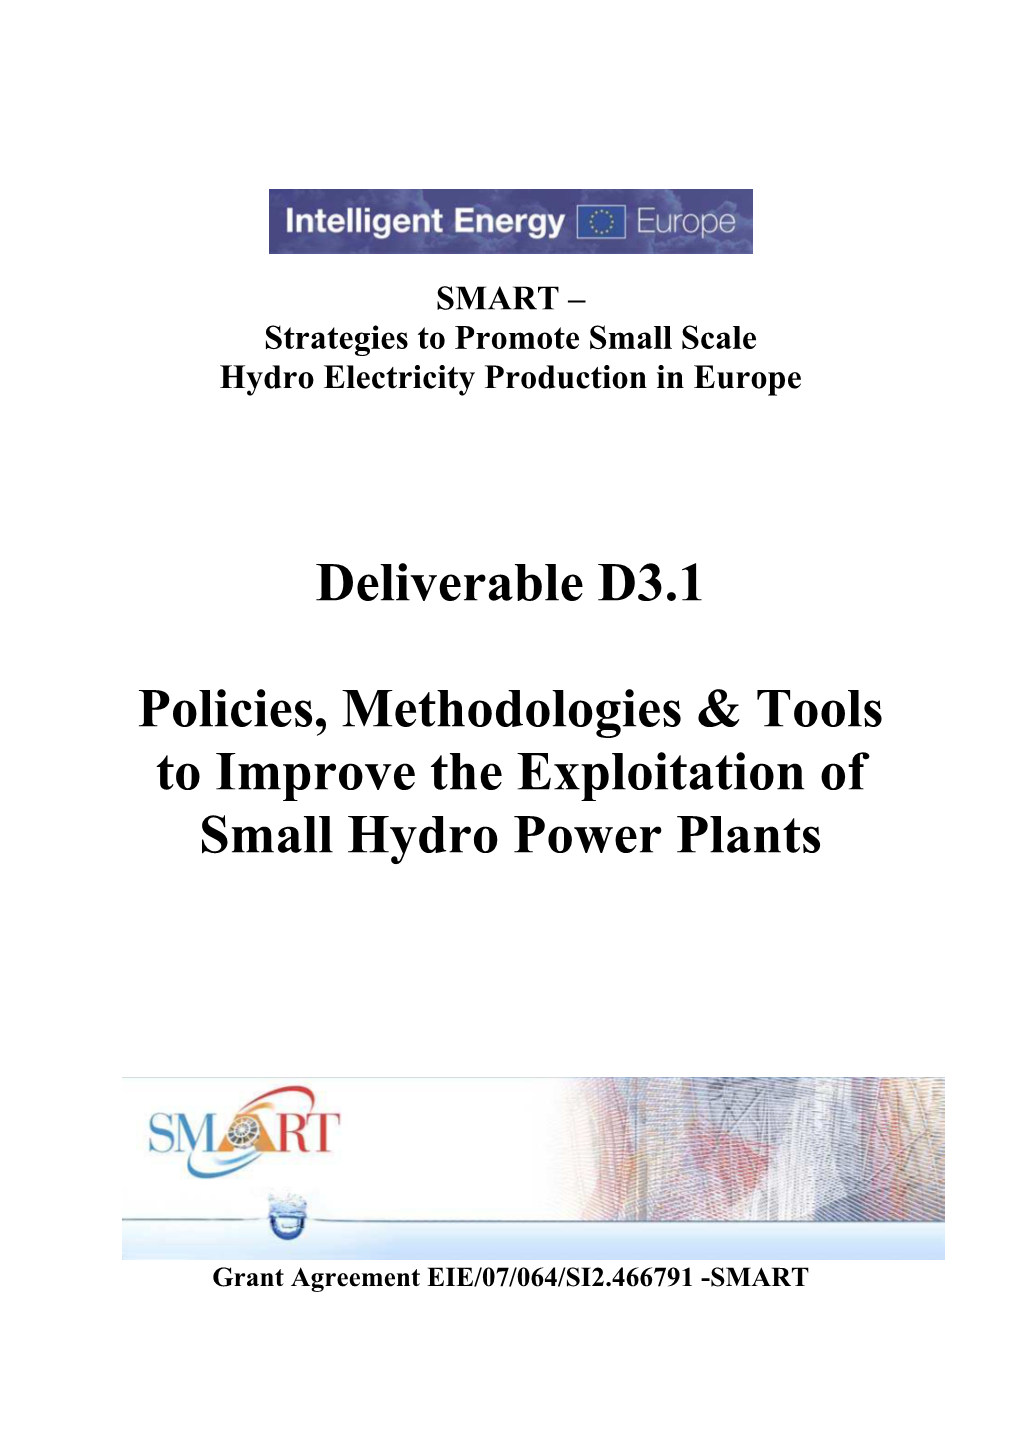 Exploitation of Small Hydro Power Plants